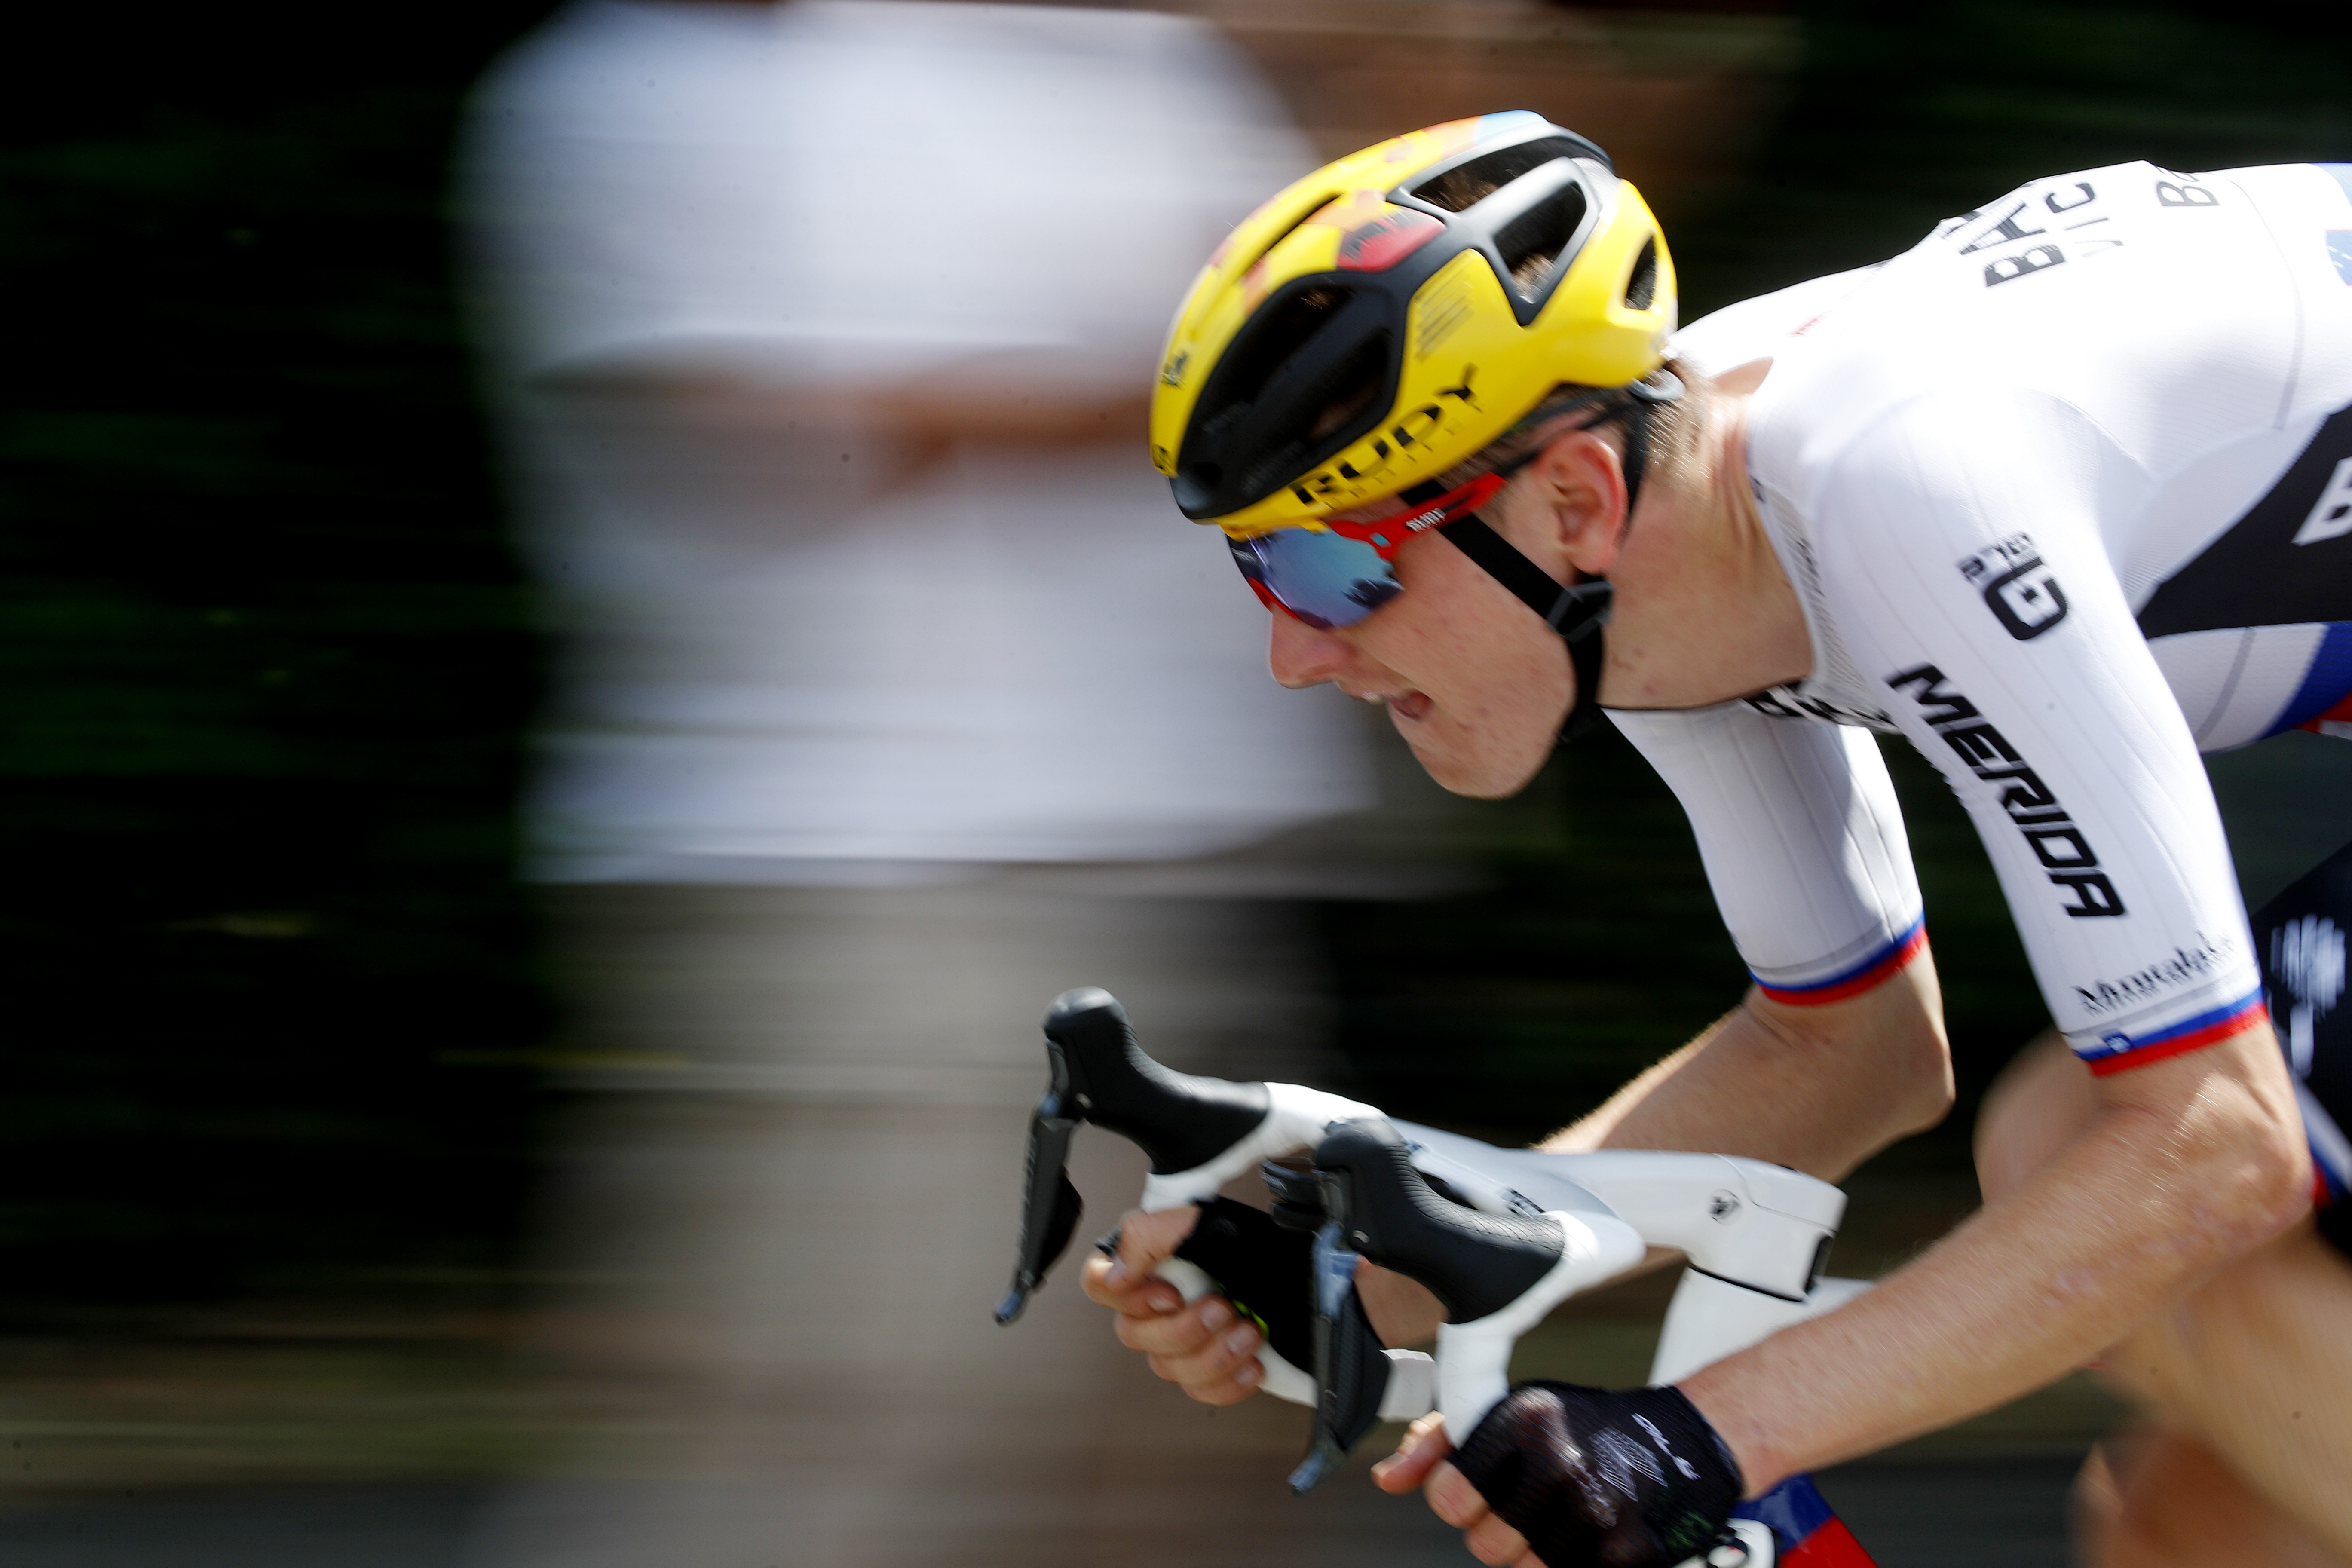 Ciclismo - Tour de Francia - etapa 19 - Mourenx a Libourne - Francia - 16 de julio de 2021 Bahrein El jinete victorioso Matej Mohoric de Eslovenia en acción durante la etapa 19 REUTERS/Stephane Mahe